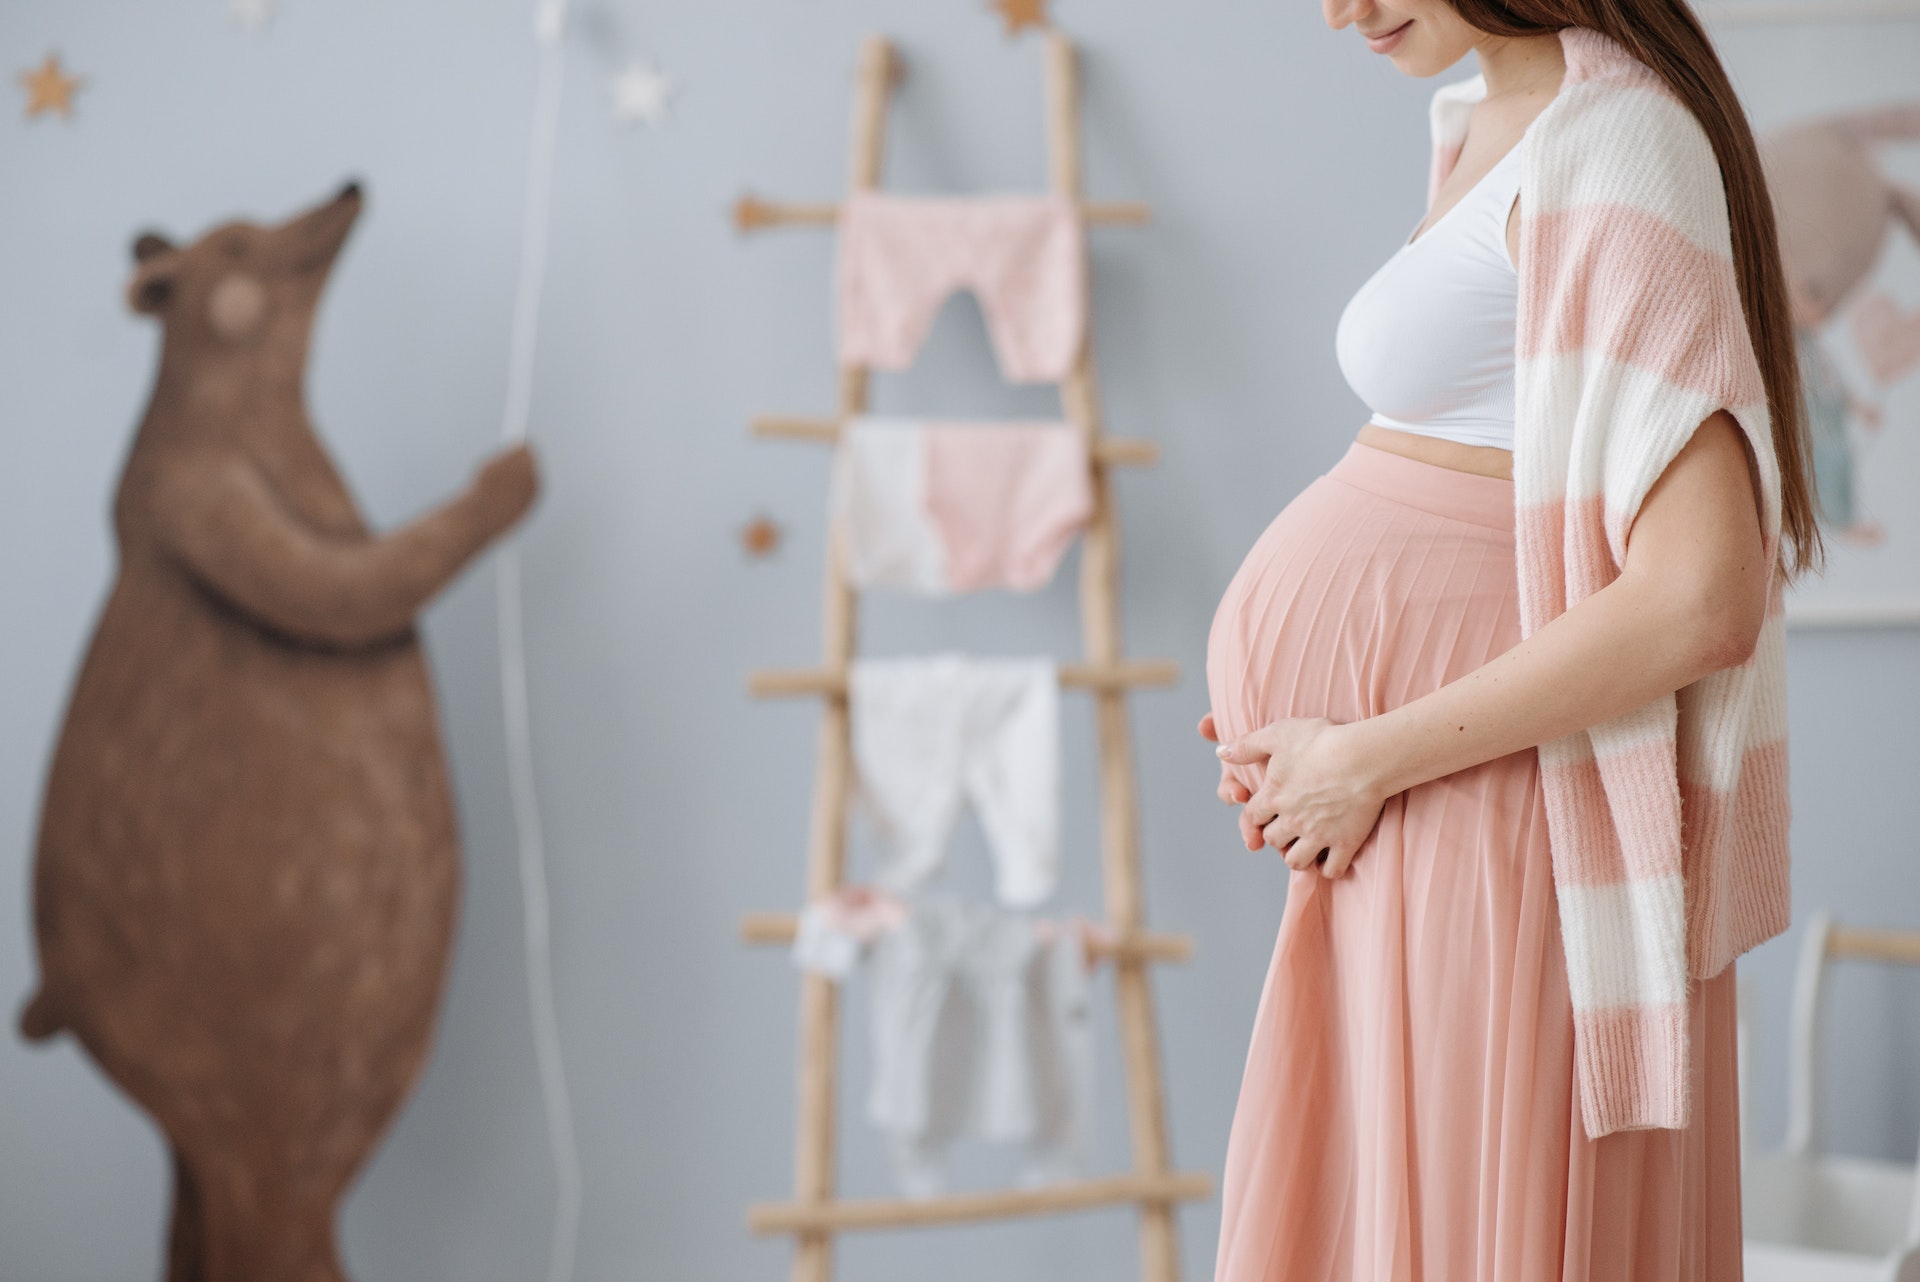 Stylizacje w ciąży: Jak wyglądać modnie i czuć się komfortowo?